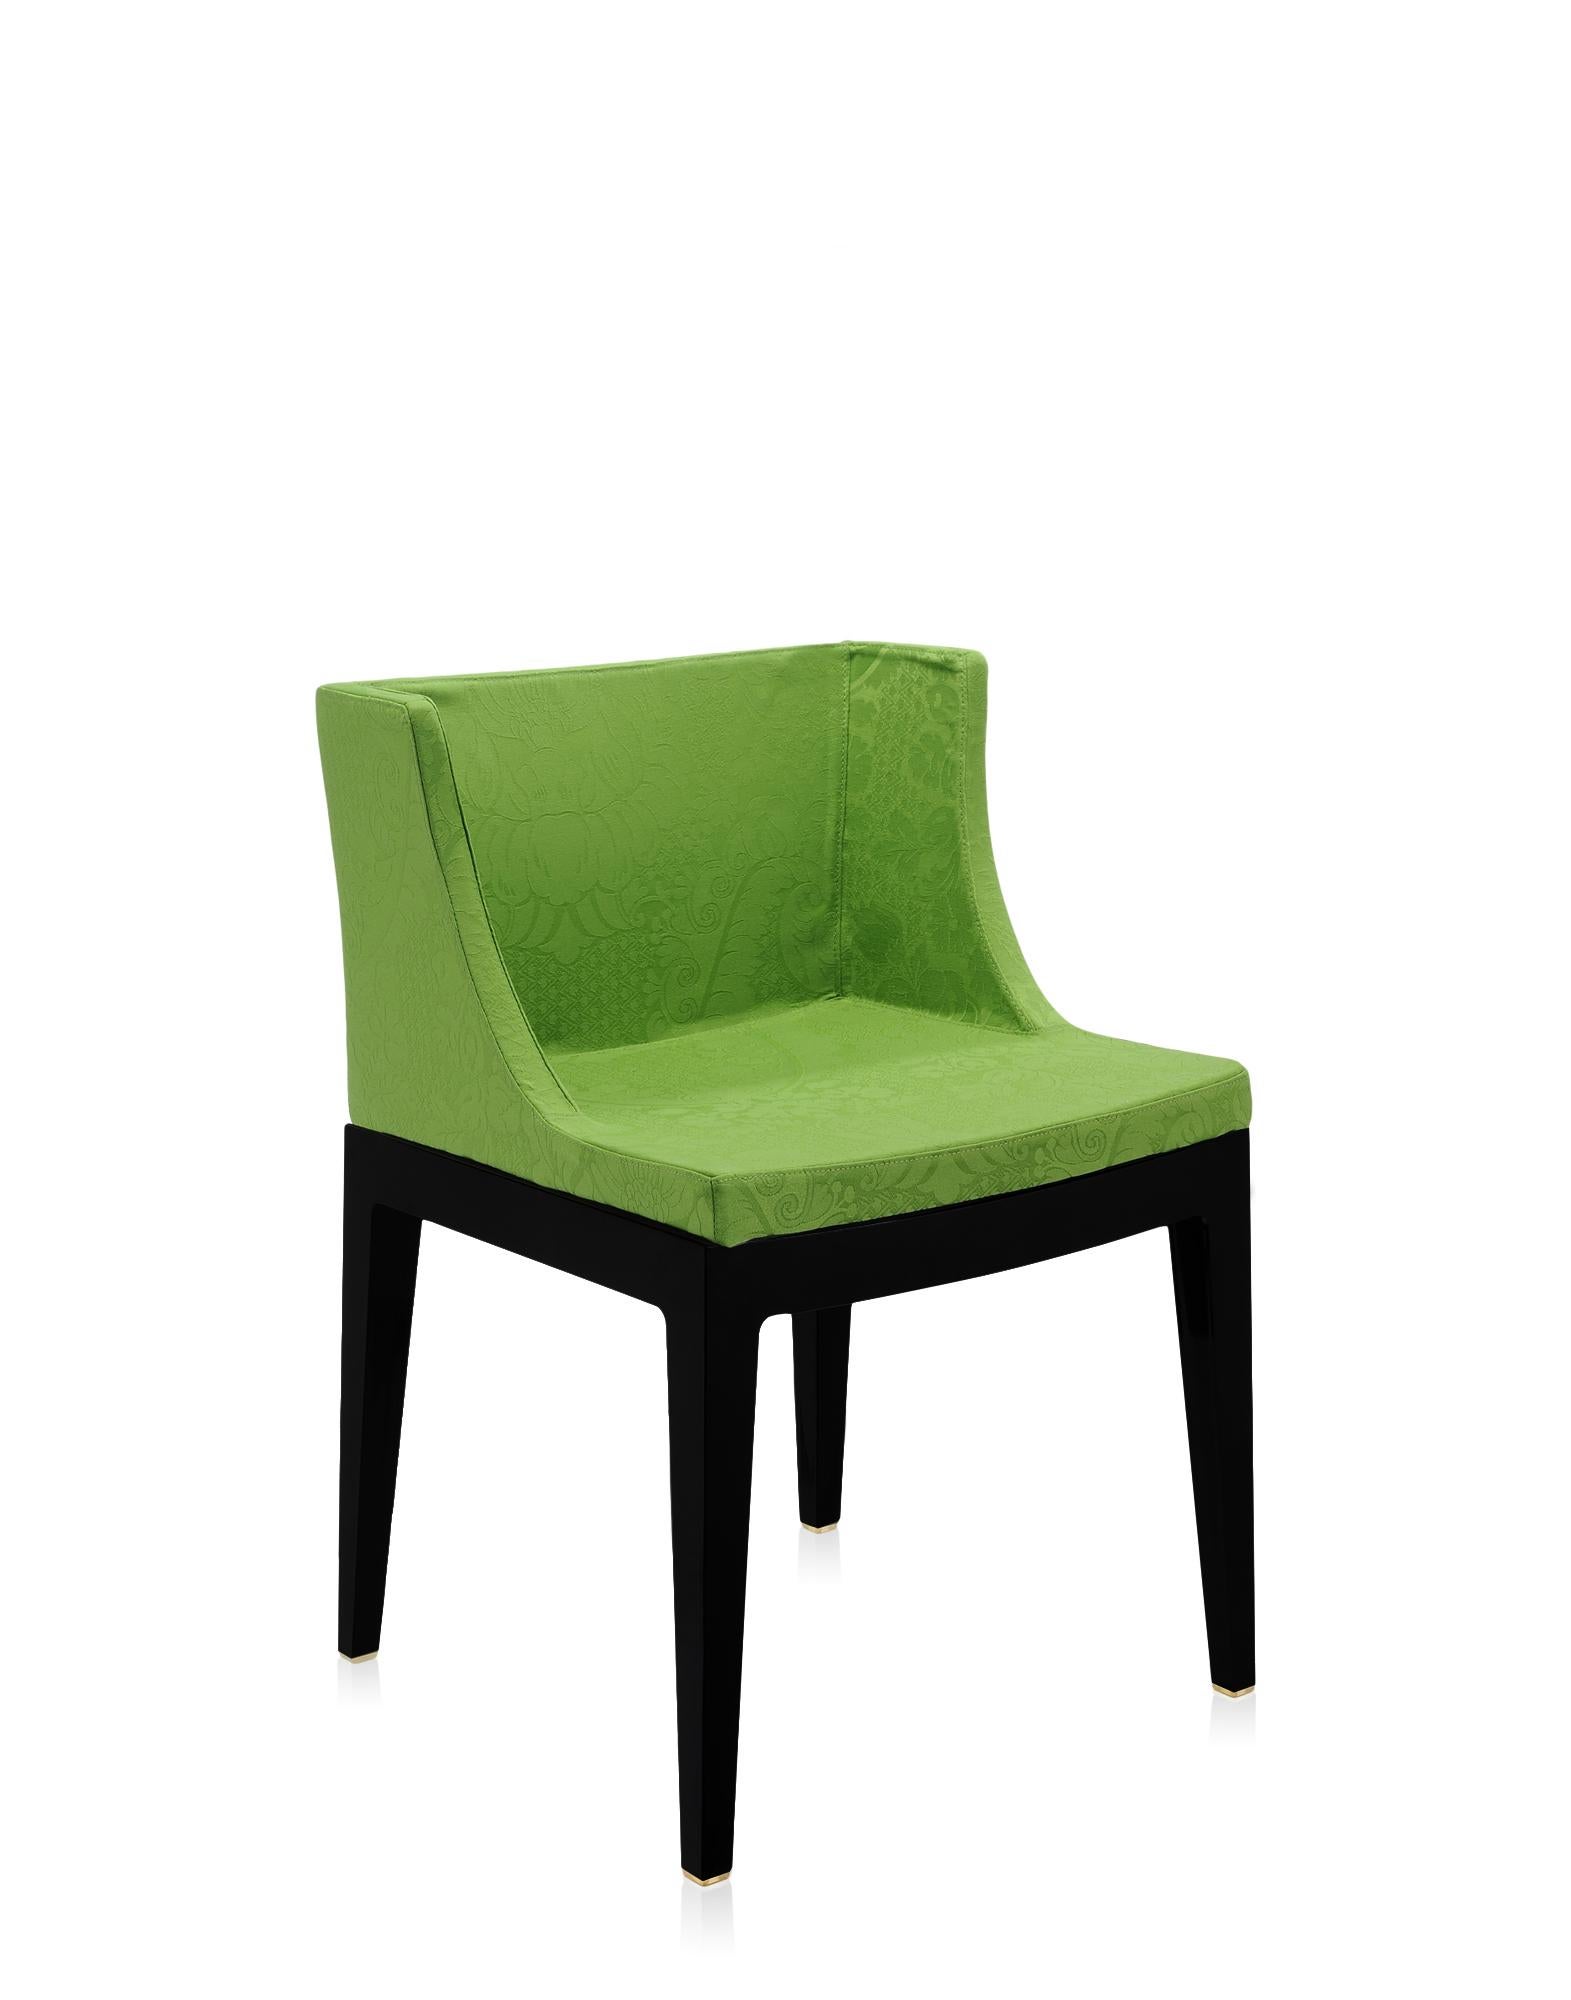 Der Sessel Mademoiselle ist mit der breiten Palette der Memphis-Stoffe ausgestattet, die von Ettore Sottsass und Nathalie du Pasquier entworfen wurden.
Er ist entweder mit transparentem oder schwarzem Rahmen erhältlich.
 